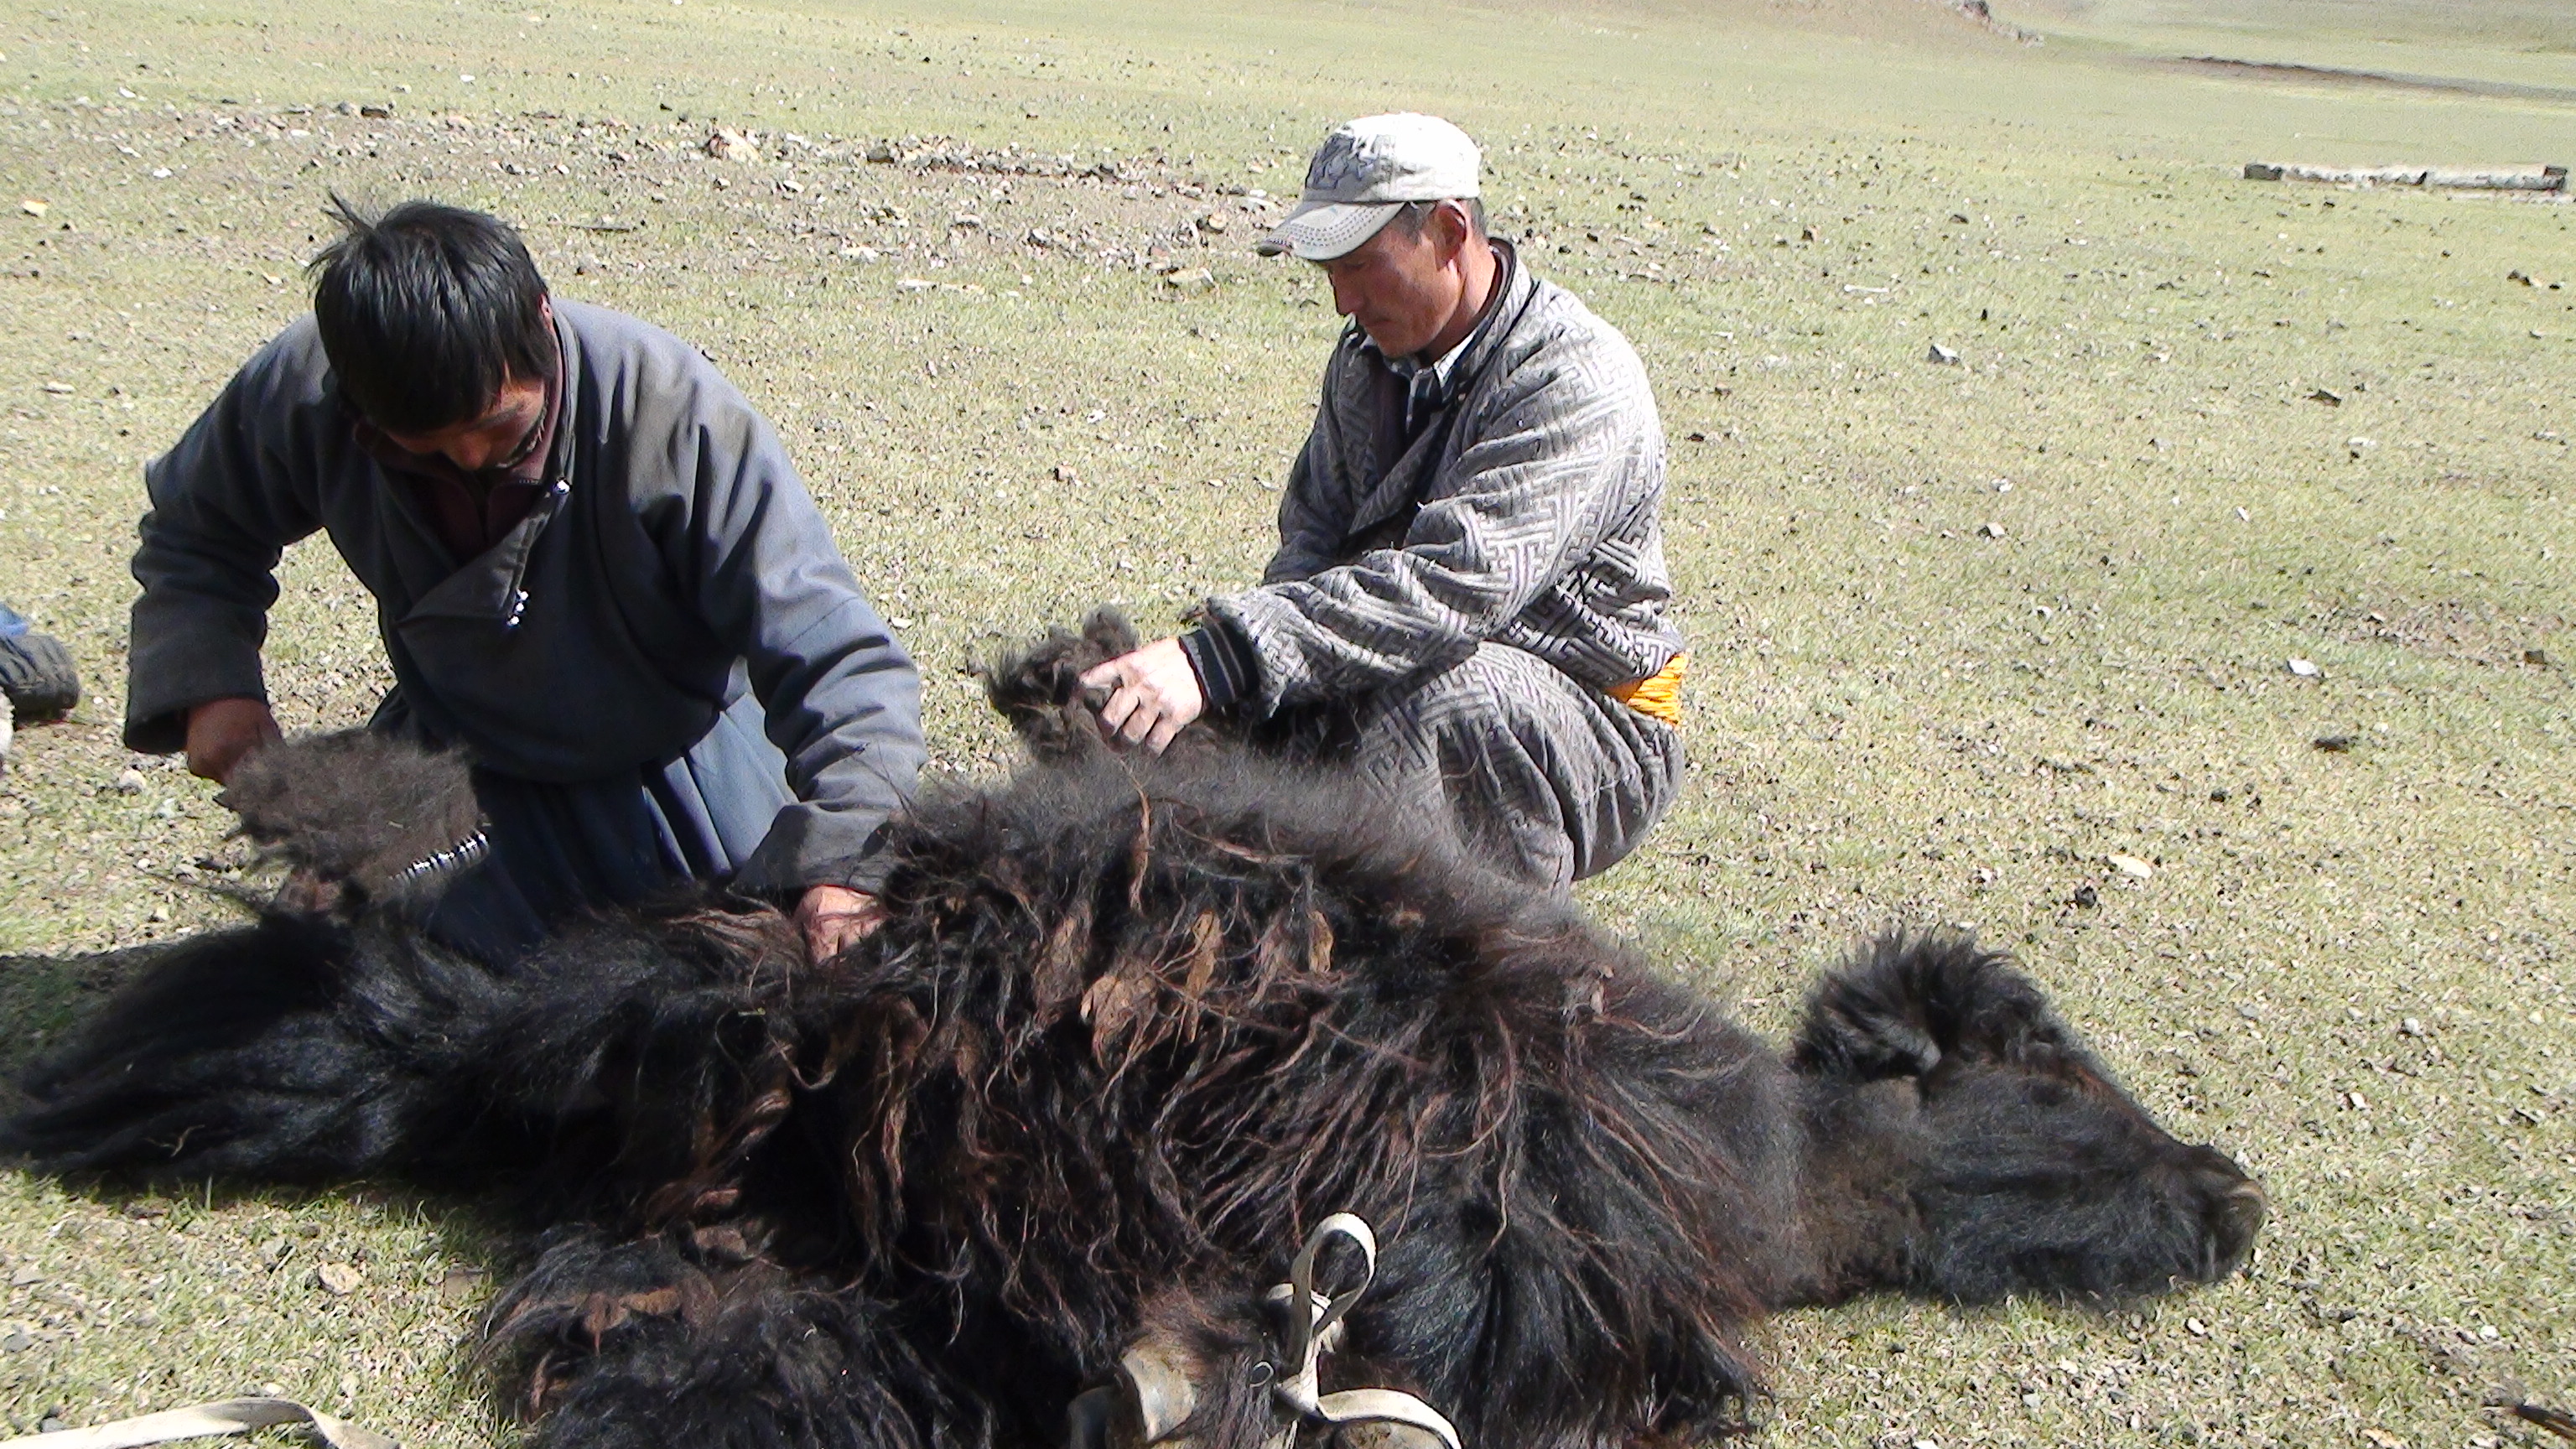 Deux hommes en train de tondre un yack immobilisé à terre.